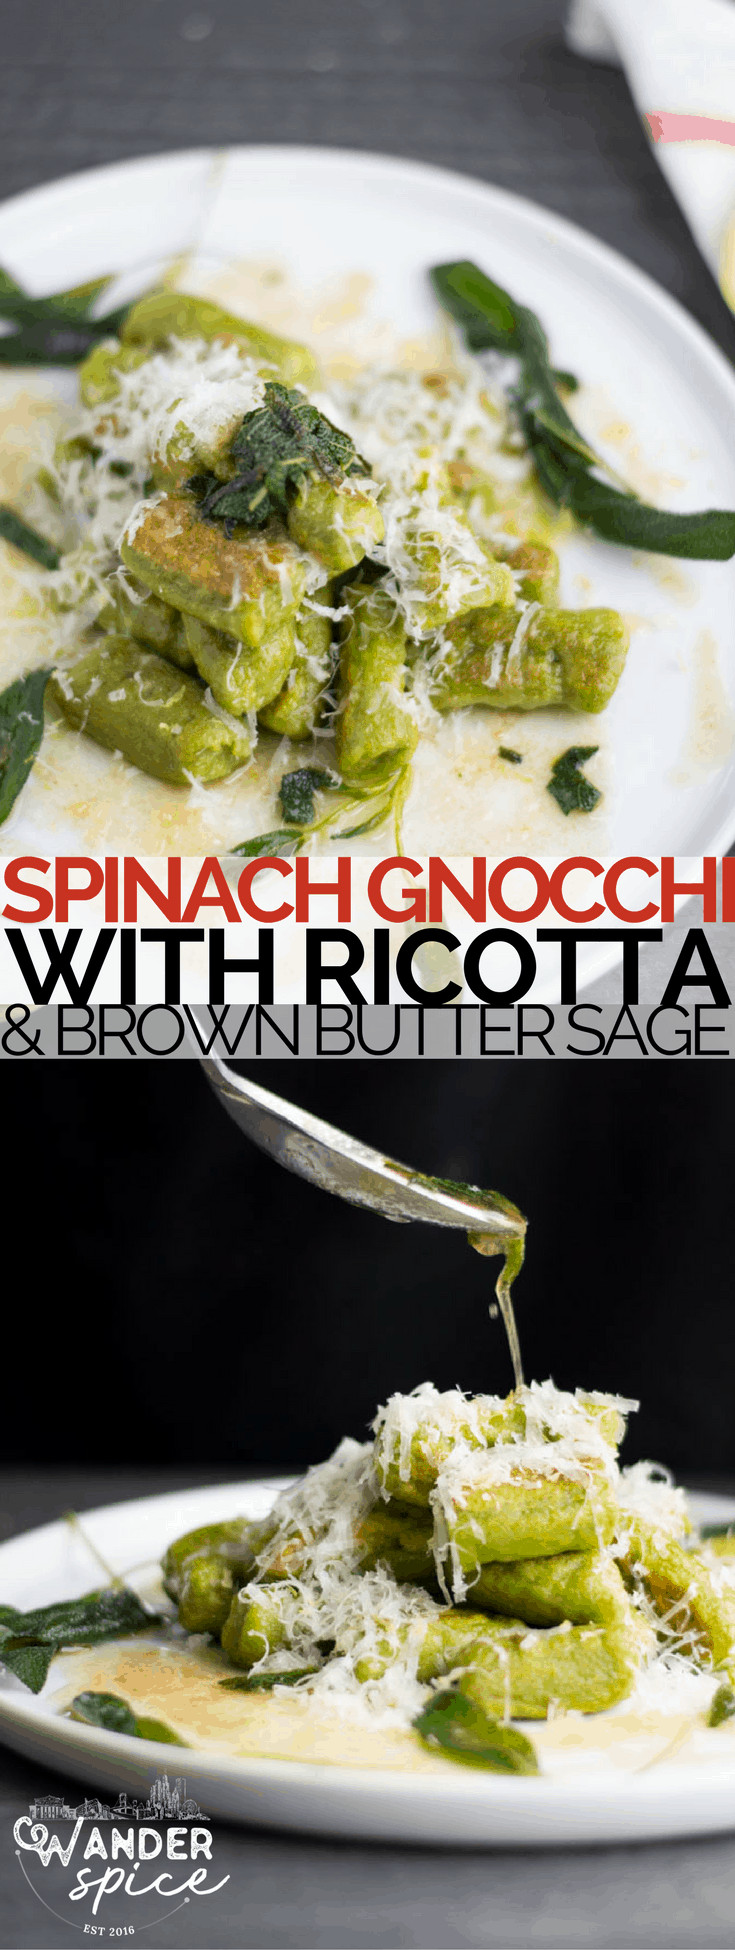 Spinach Gnocchi Ricotta